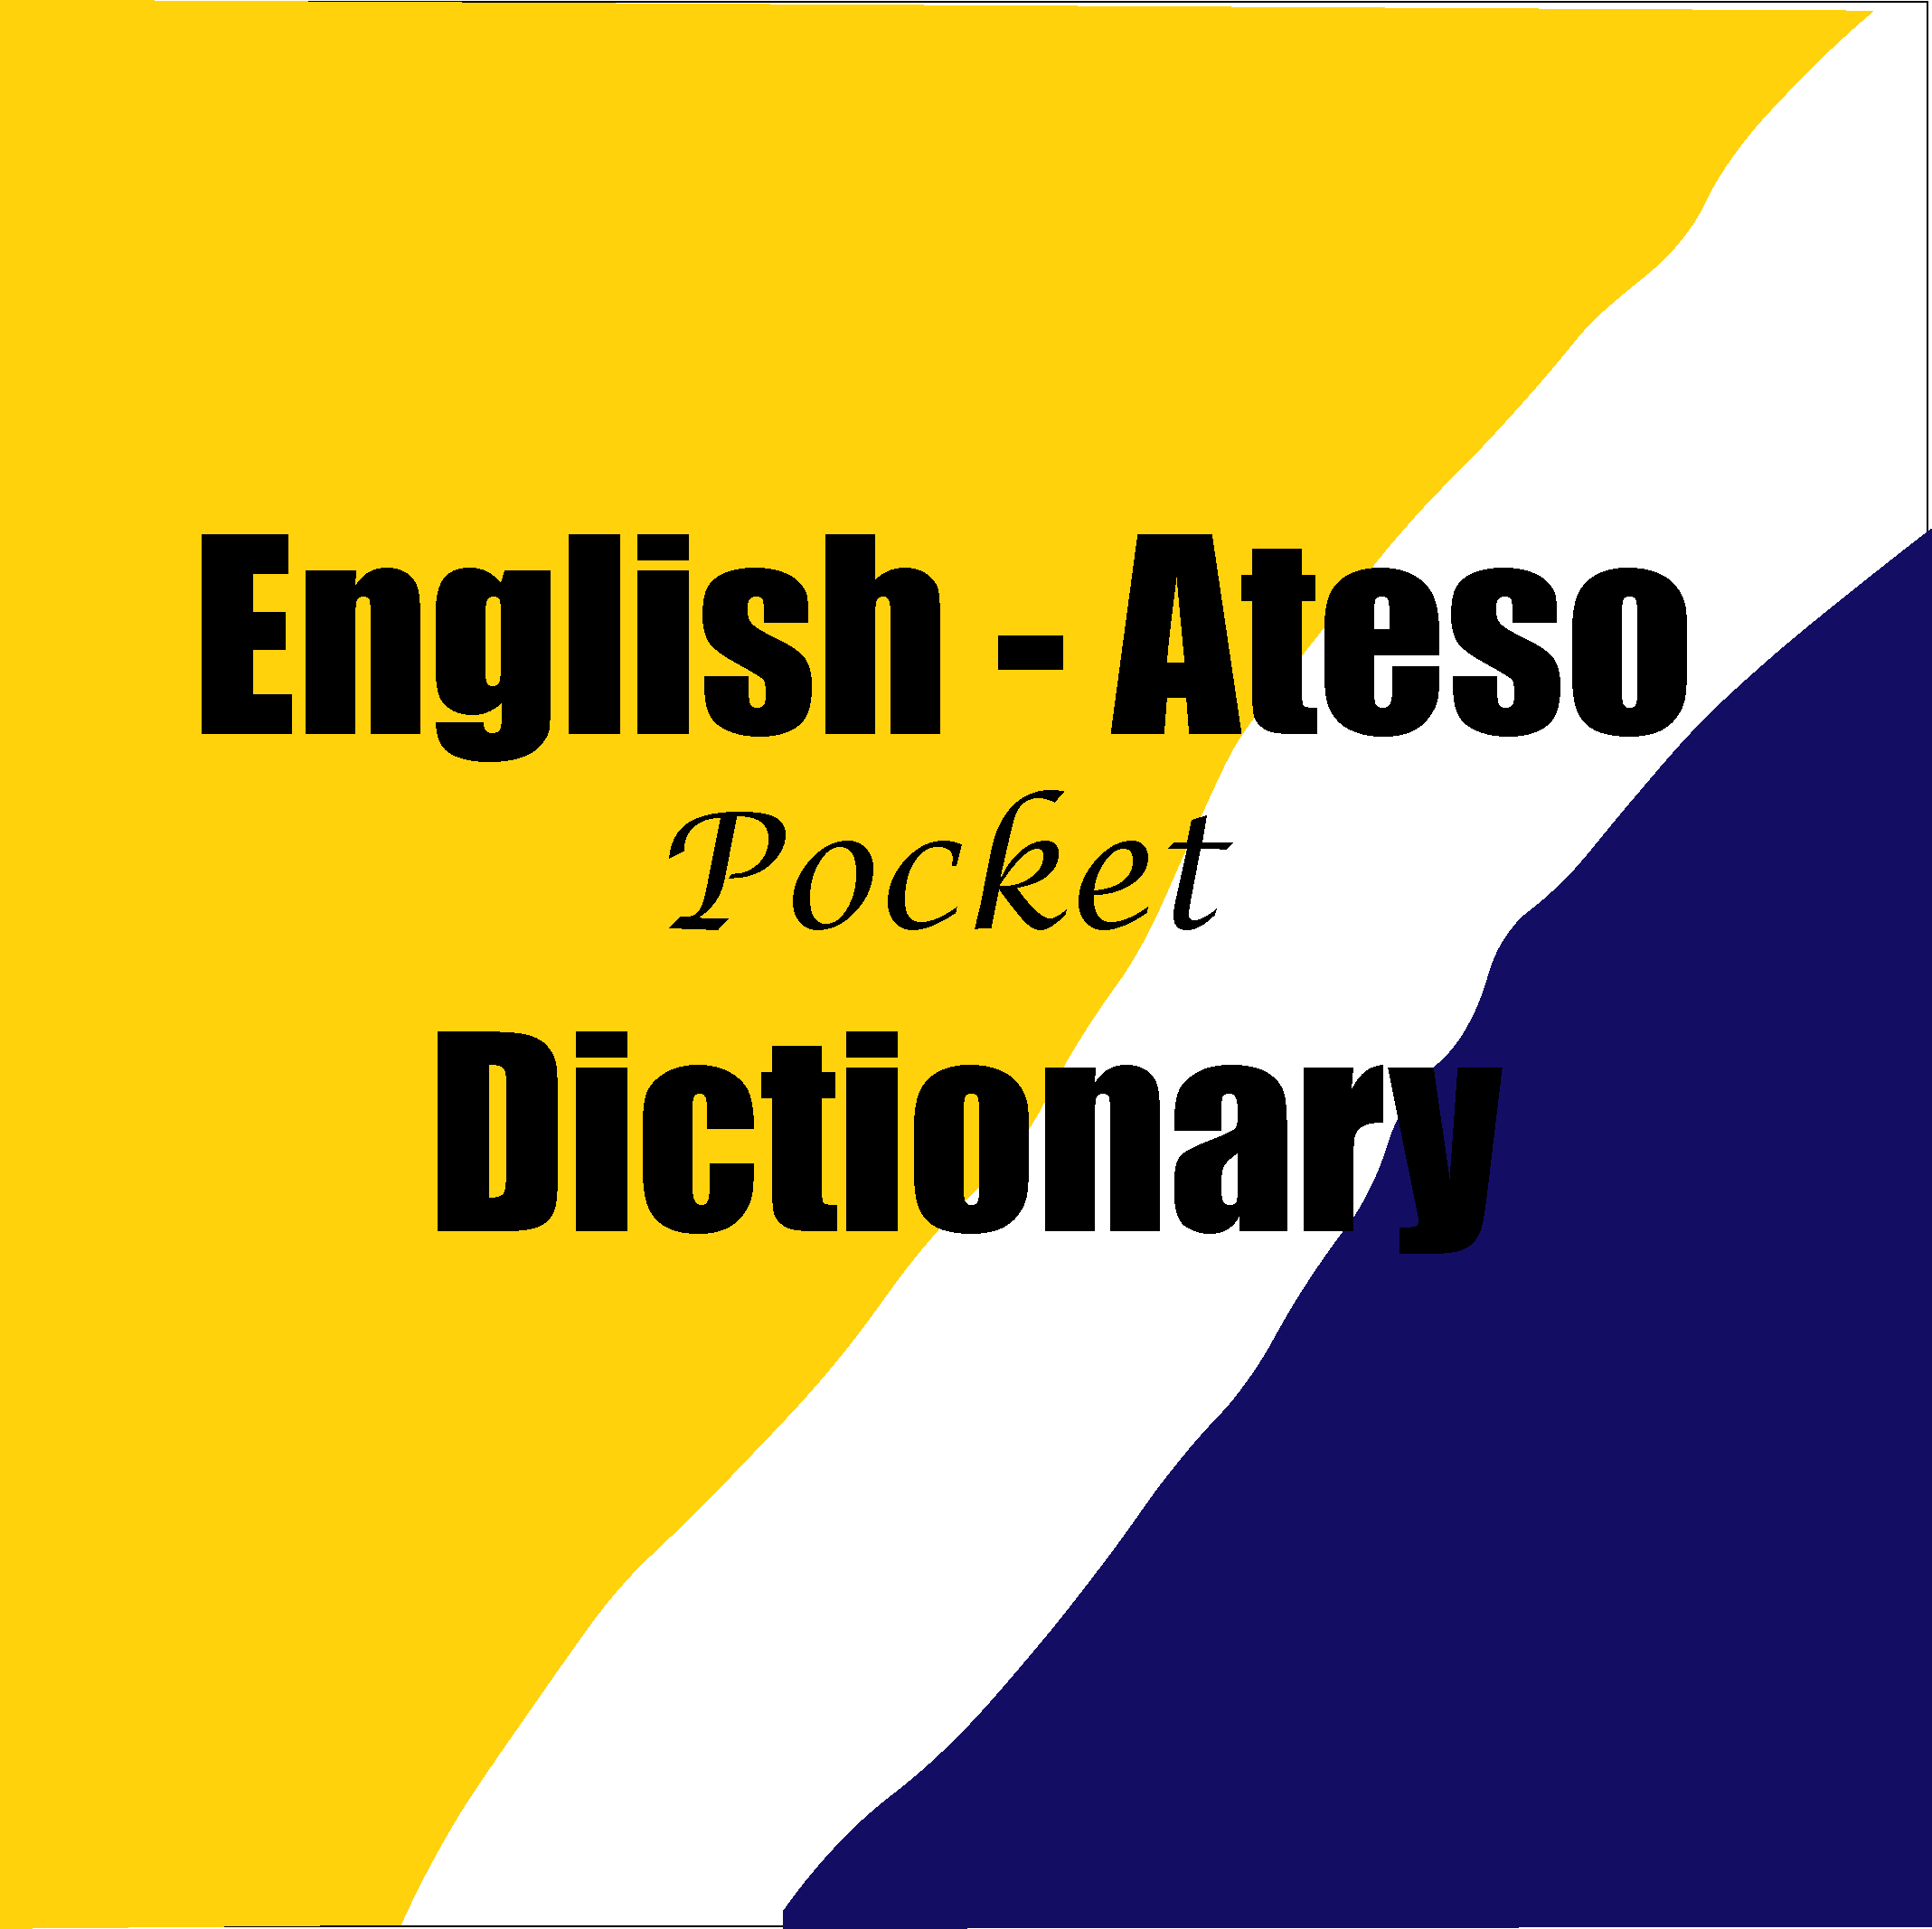 Ateso Dictionary